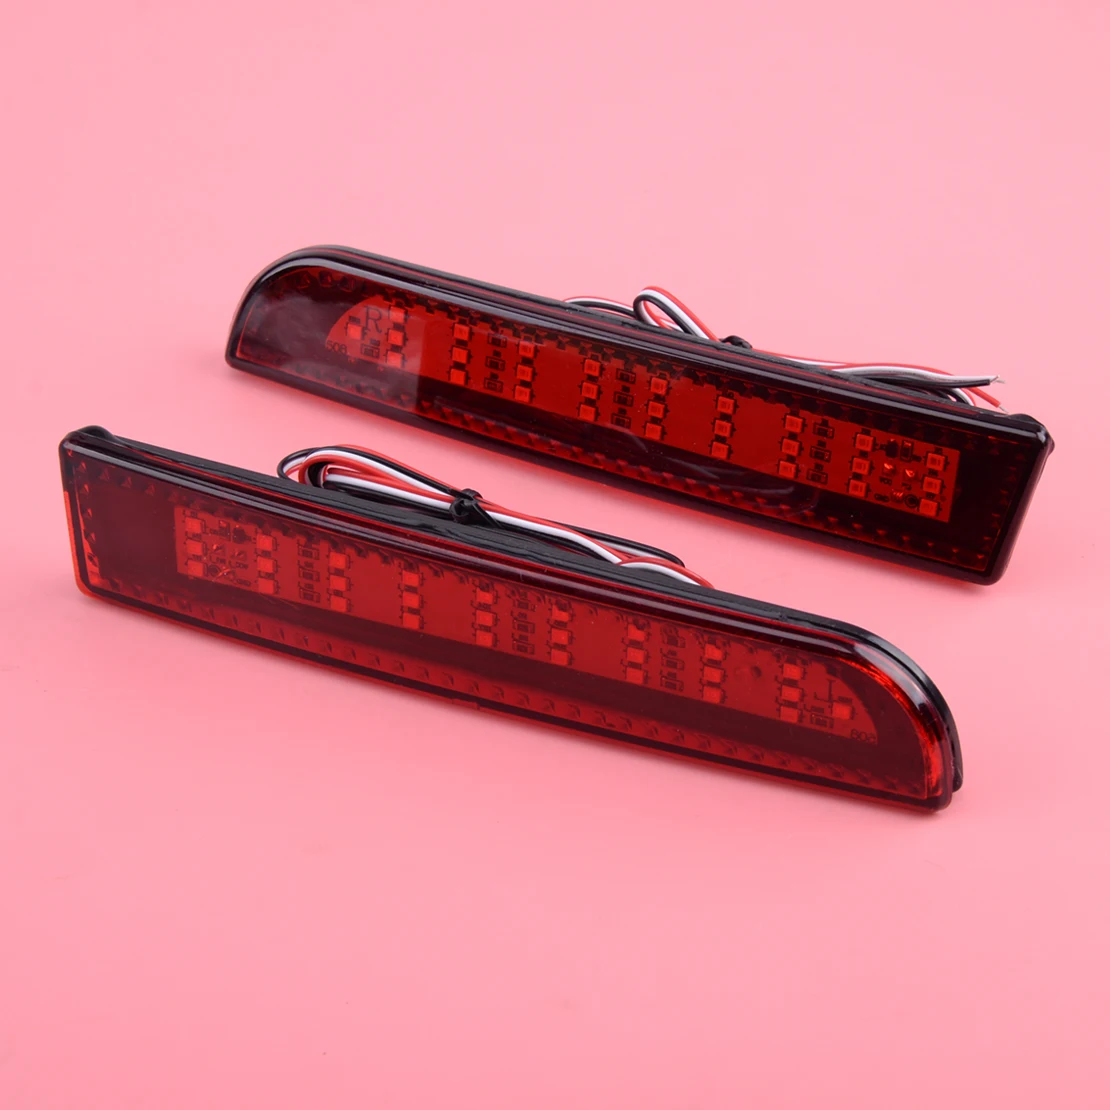 MR515740 8355A040 MR515741 8355A039 2 adet arka tampon reflektörlü fren lambası sis lambası kırmızı Lens için Fit Mitsubishi Lancer EVO